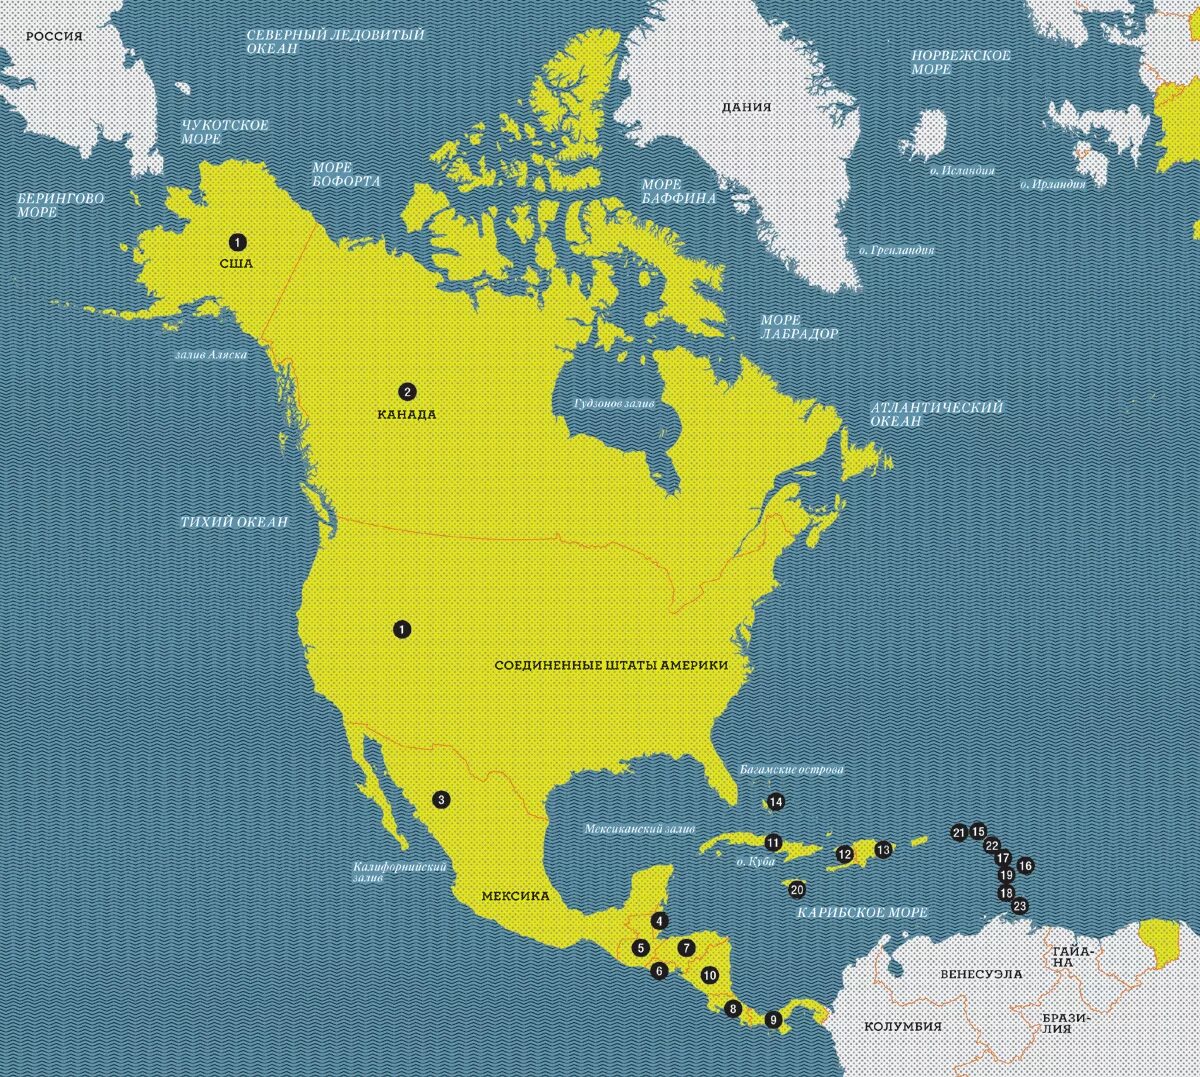 Назовите территории северной америки. Государства Северной Америки и их столицы на карте. Страны Северной Америки. С раны сеаерноц Америки. Страны Северной армике.